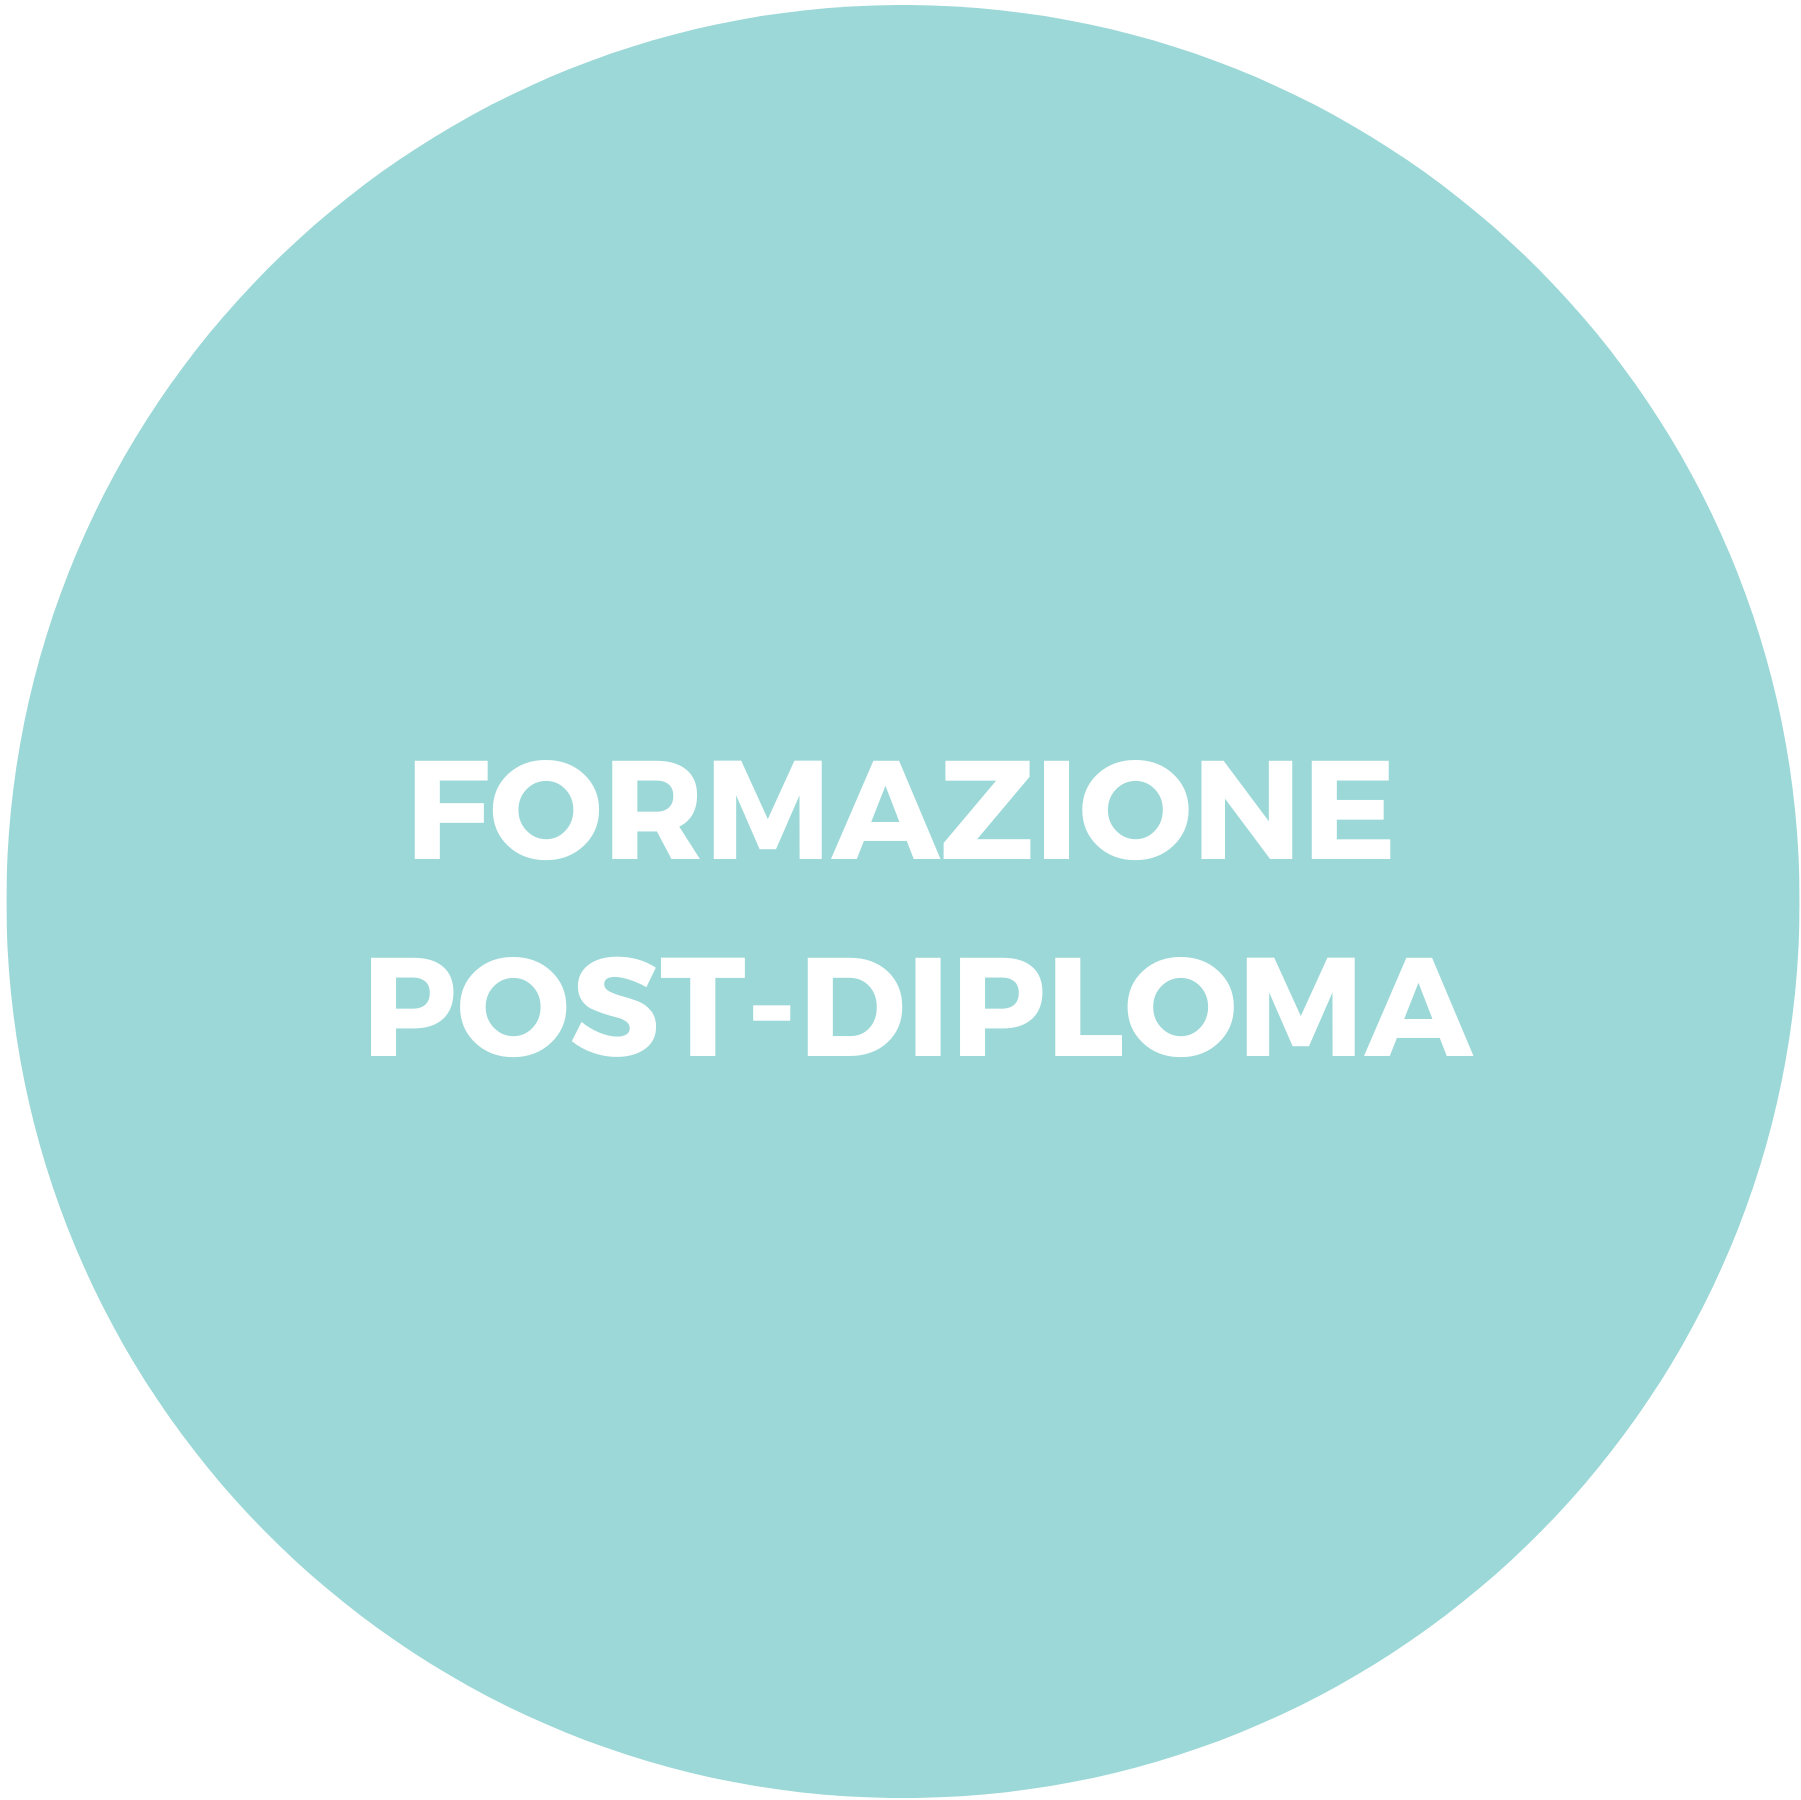 Formazione post diploma